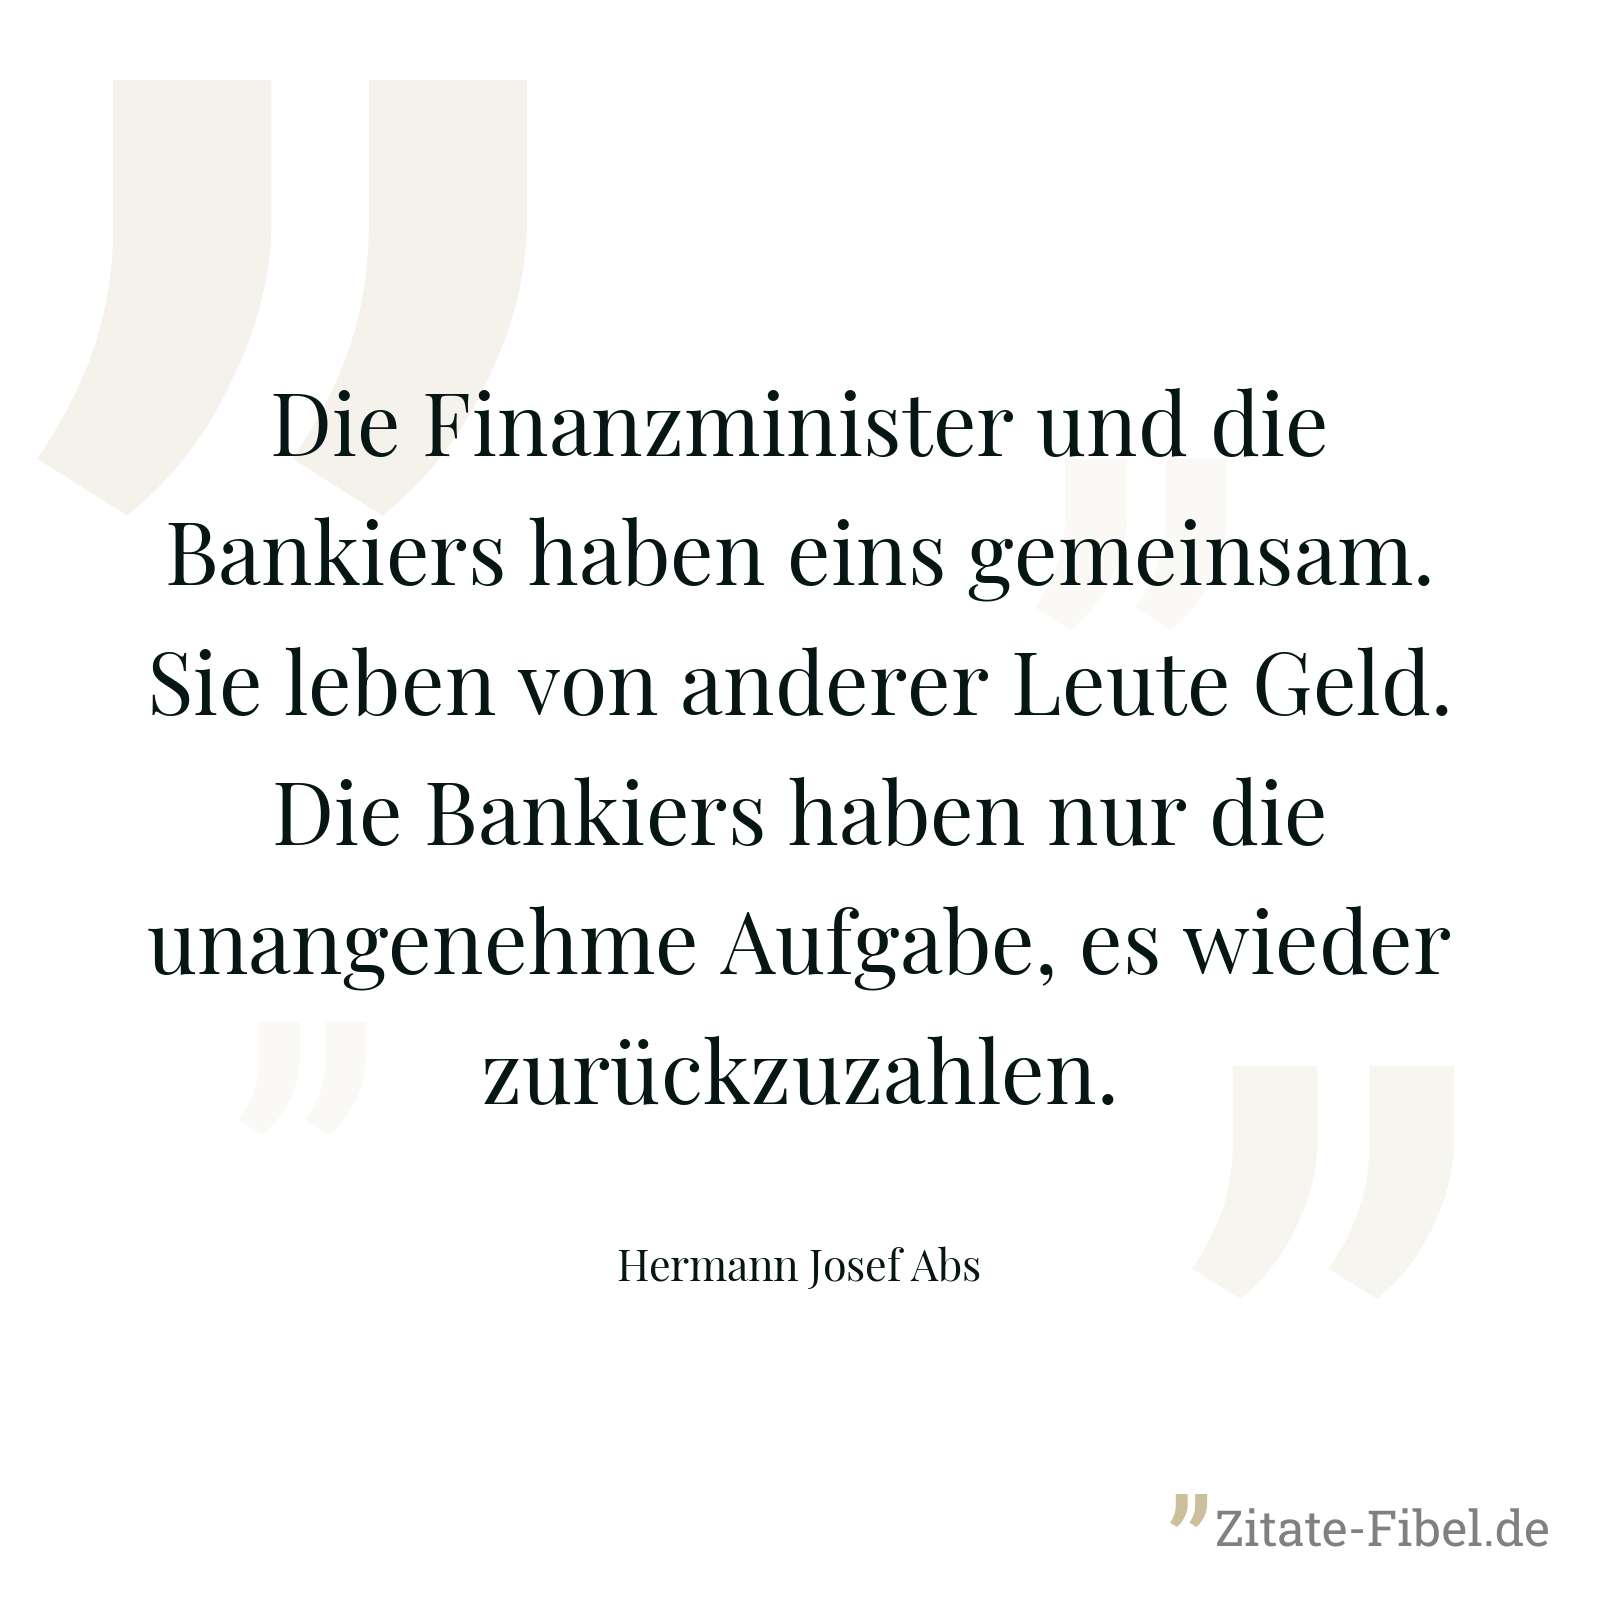 Die Finanzminister und die Bankiers haben eins gemeinsam. Sie leben von anderer Leute Geld. Die Bankiers haben nur die unangenehme Aufgabe, es wieder zurückzuzahlen. - Hermann Josef Abs